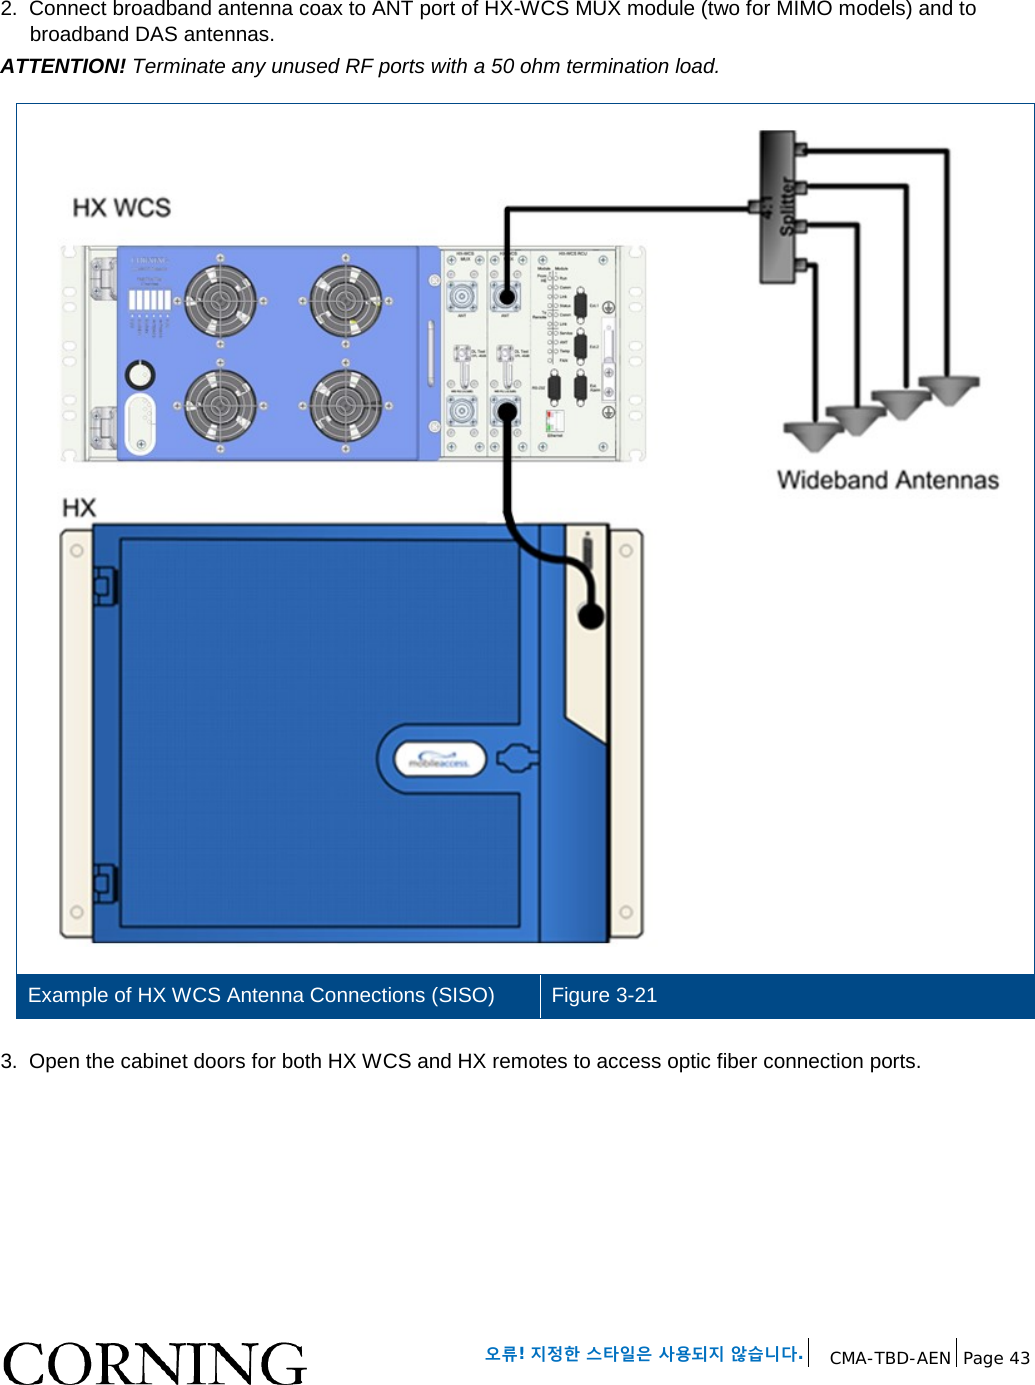   오류! 지정한 스타일은 사용되지 않습니다. CMA-TBD-AEN Page 43   2.  Connect broadband antenna coax to ANT port of HX-WCS MUX module (two for MIMO models) and to broadband DAS antennas.  ATTENTION! Terminate any unused RF ports with a 50 ohm termination load.   Example of HX WCS Antenna Connections (SISO) Figure 3-21  3.  Open the cabinet doors for both HX WCS and HX remotes to access optic fiber connection ports.    